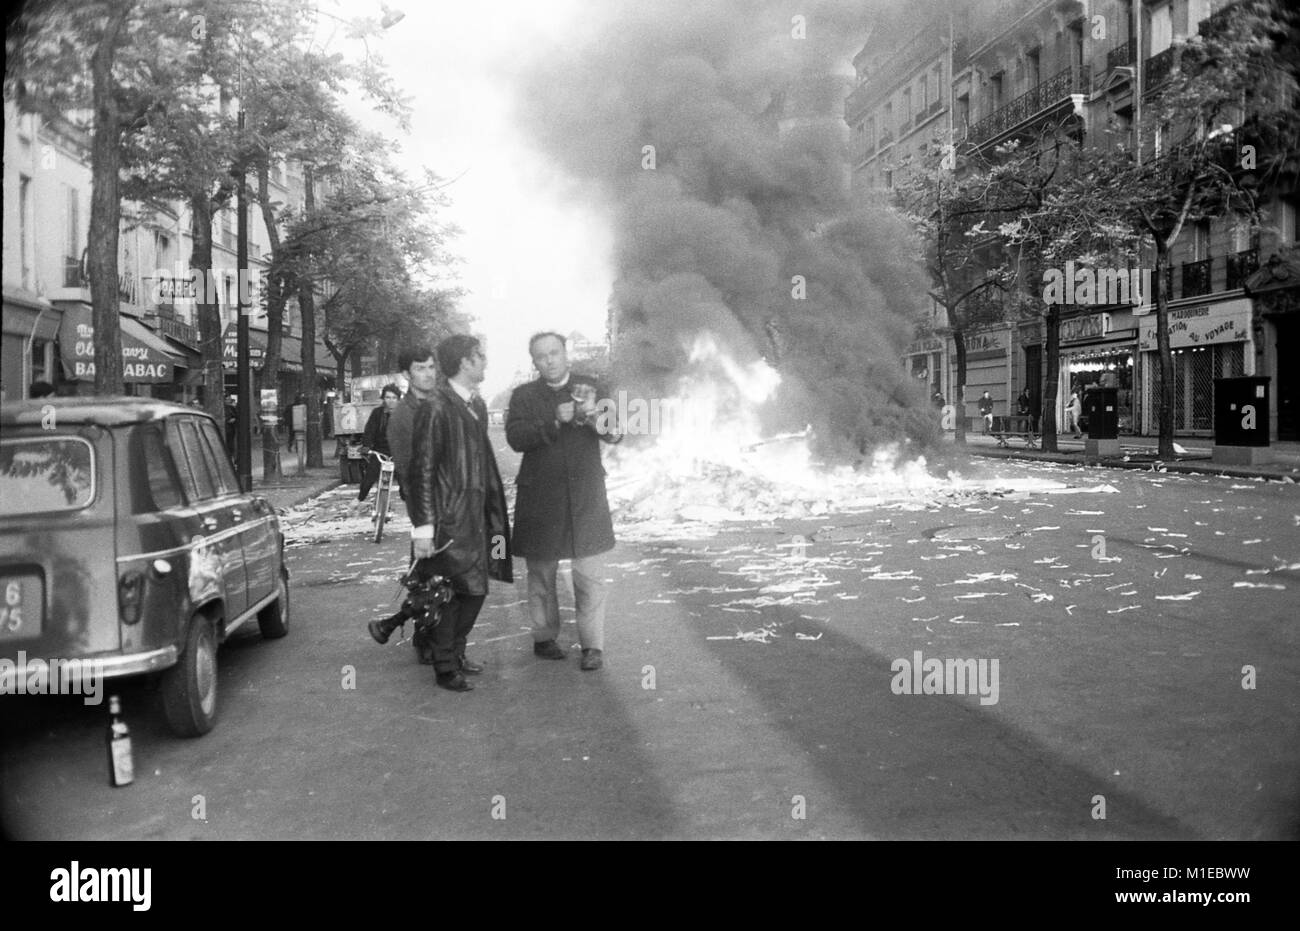 Philippe Gras / Le Pictorium - Mai 68 - 1968 - France / Ile-de-France (région) / Paris - Manifestants allumé un feu Boulevard Saint-Germain, 1968 Banque D'Images